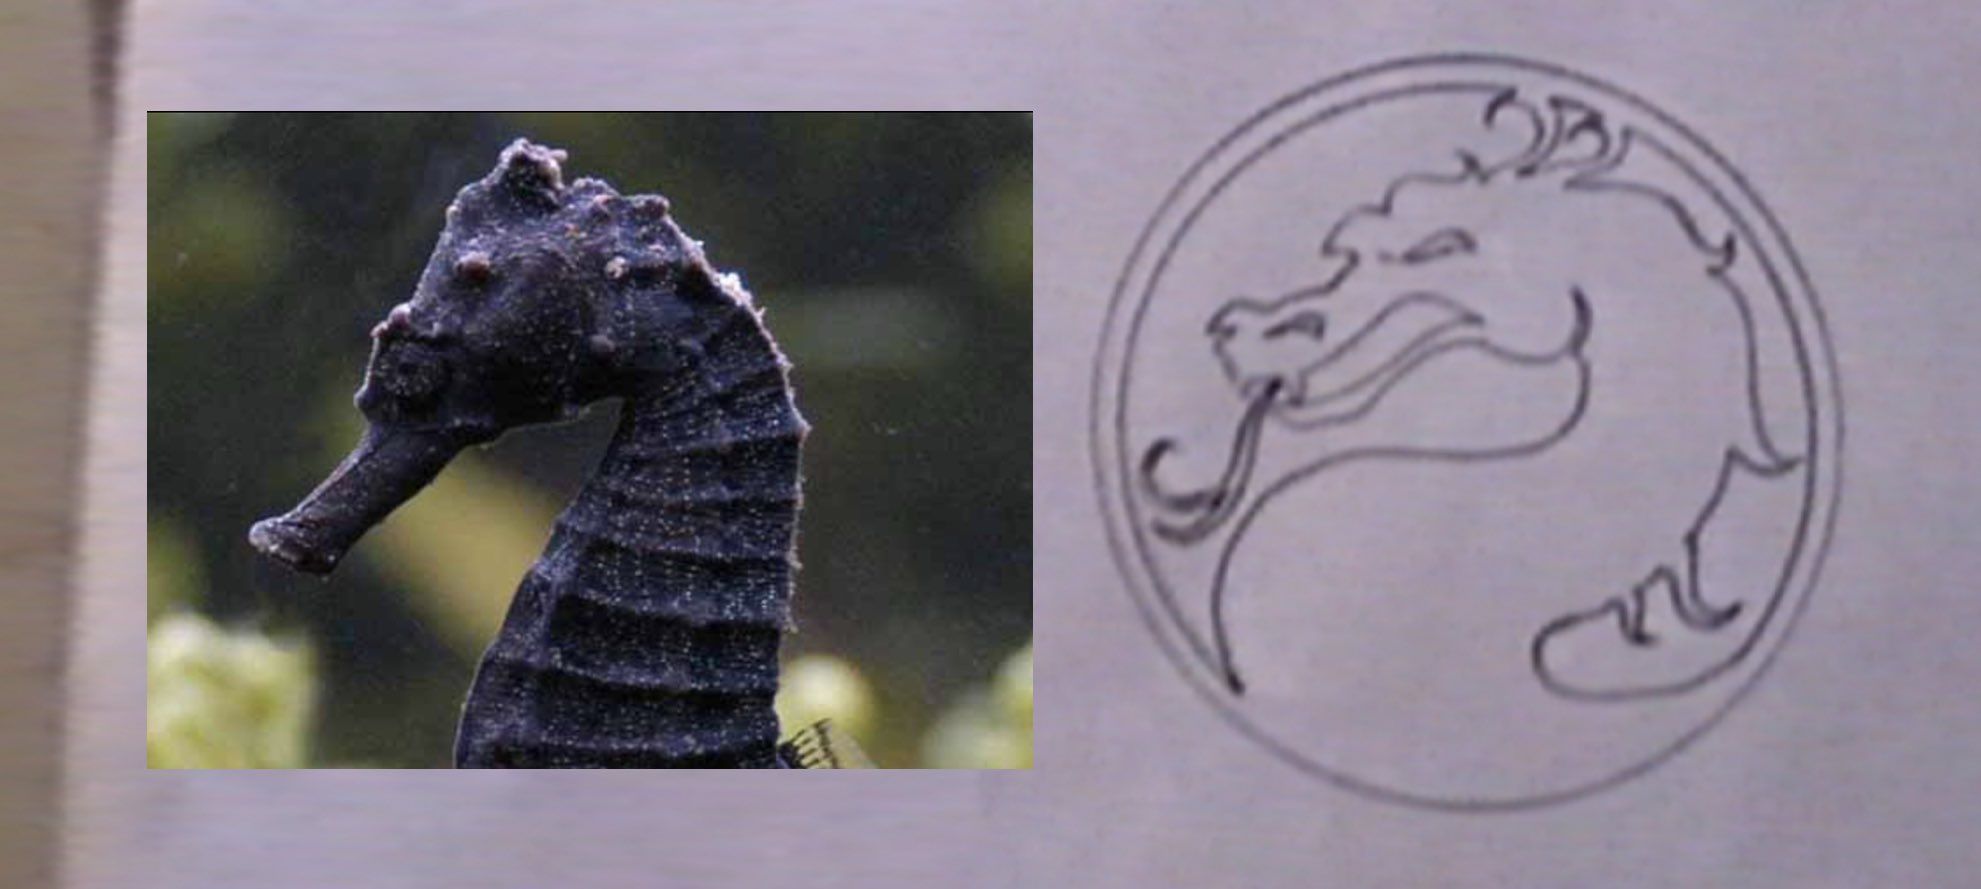 Сравнение логотипа с морским коньком. Источник: твиттер